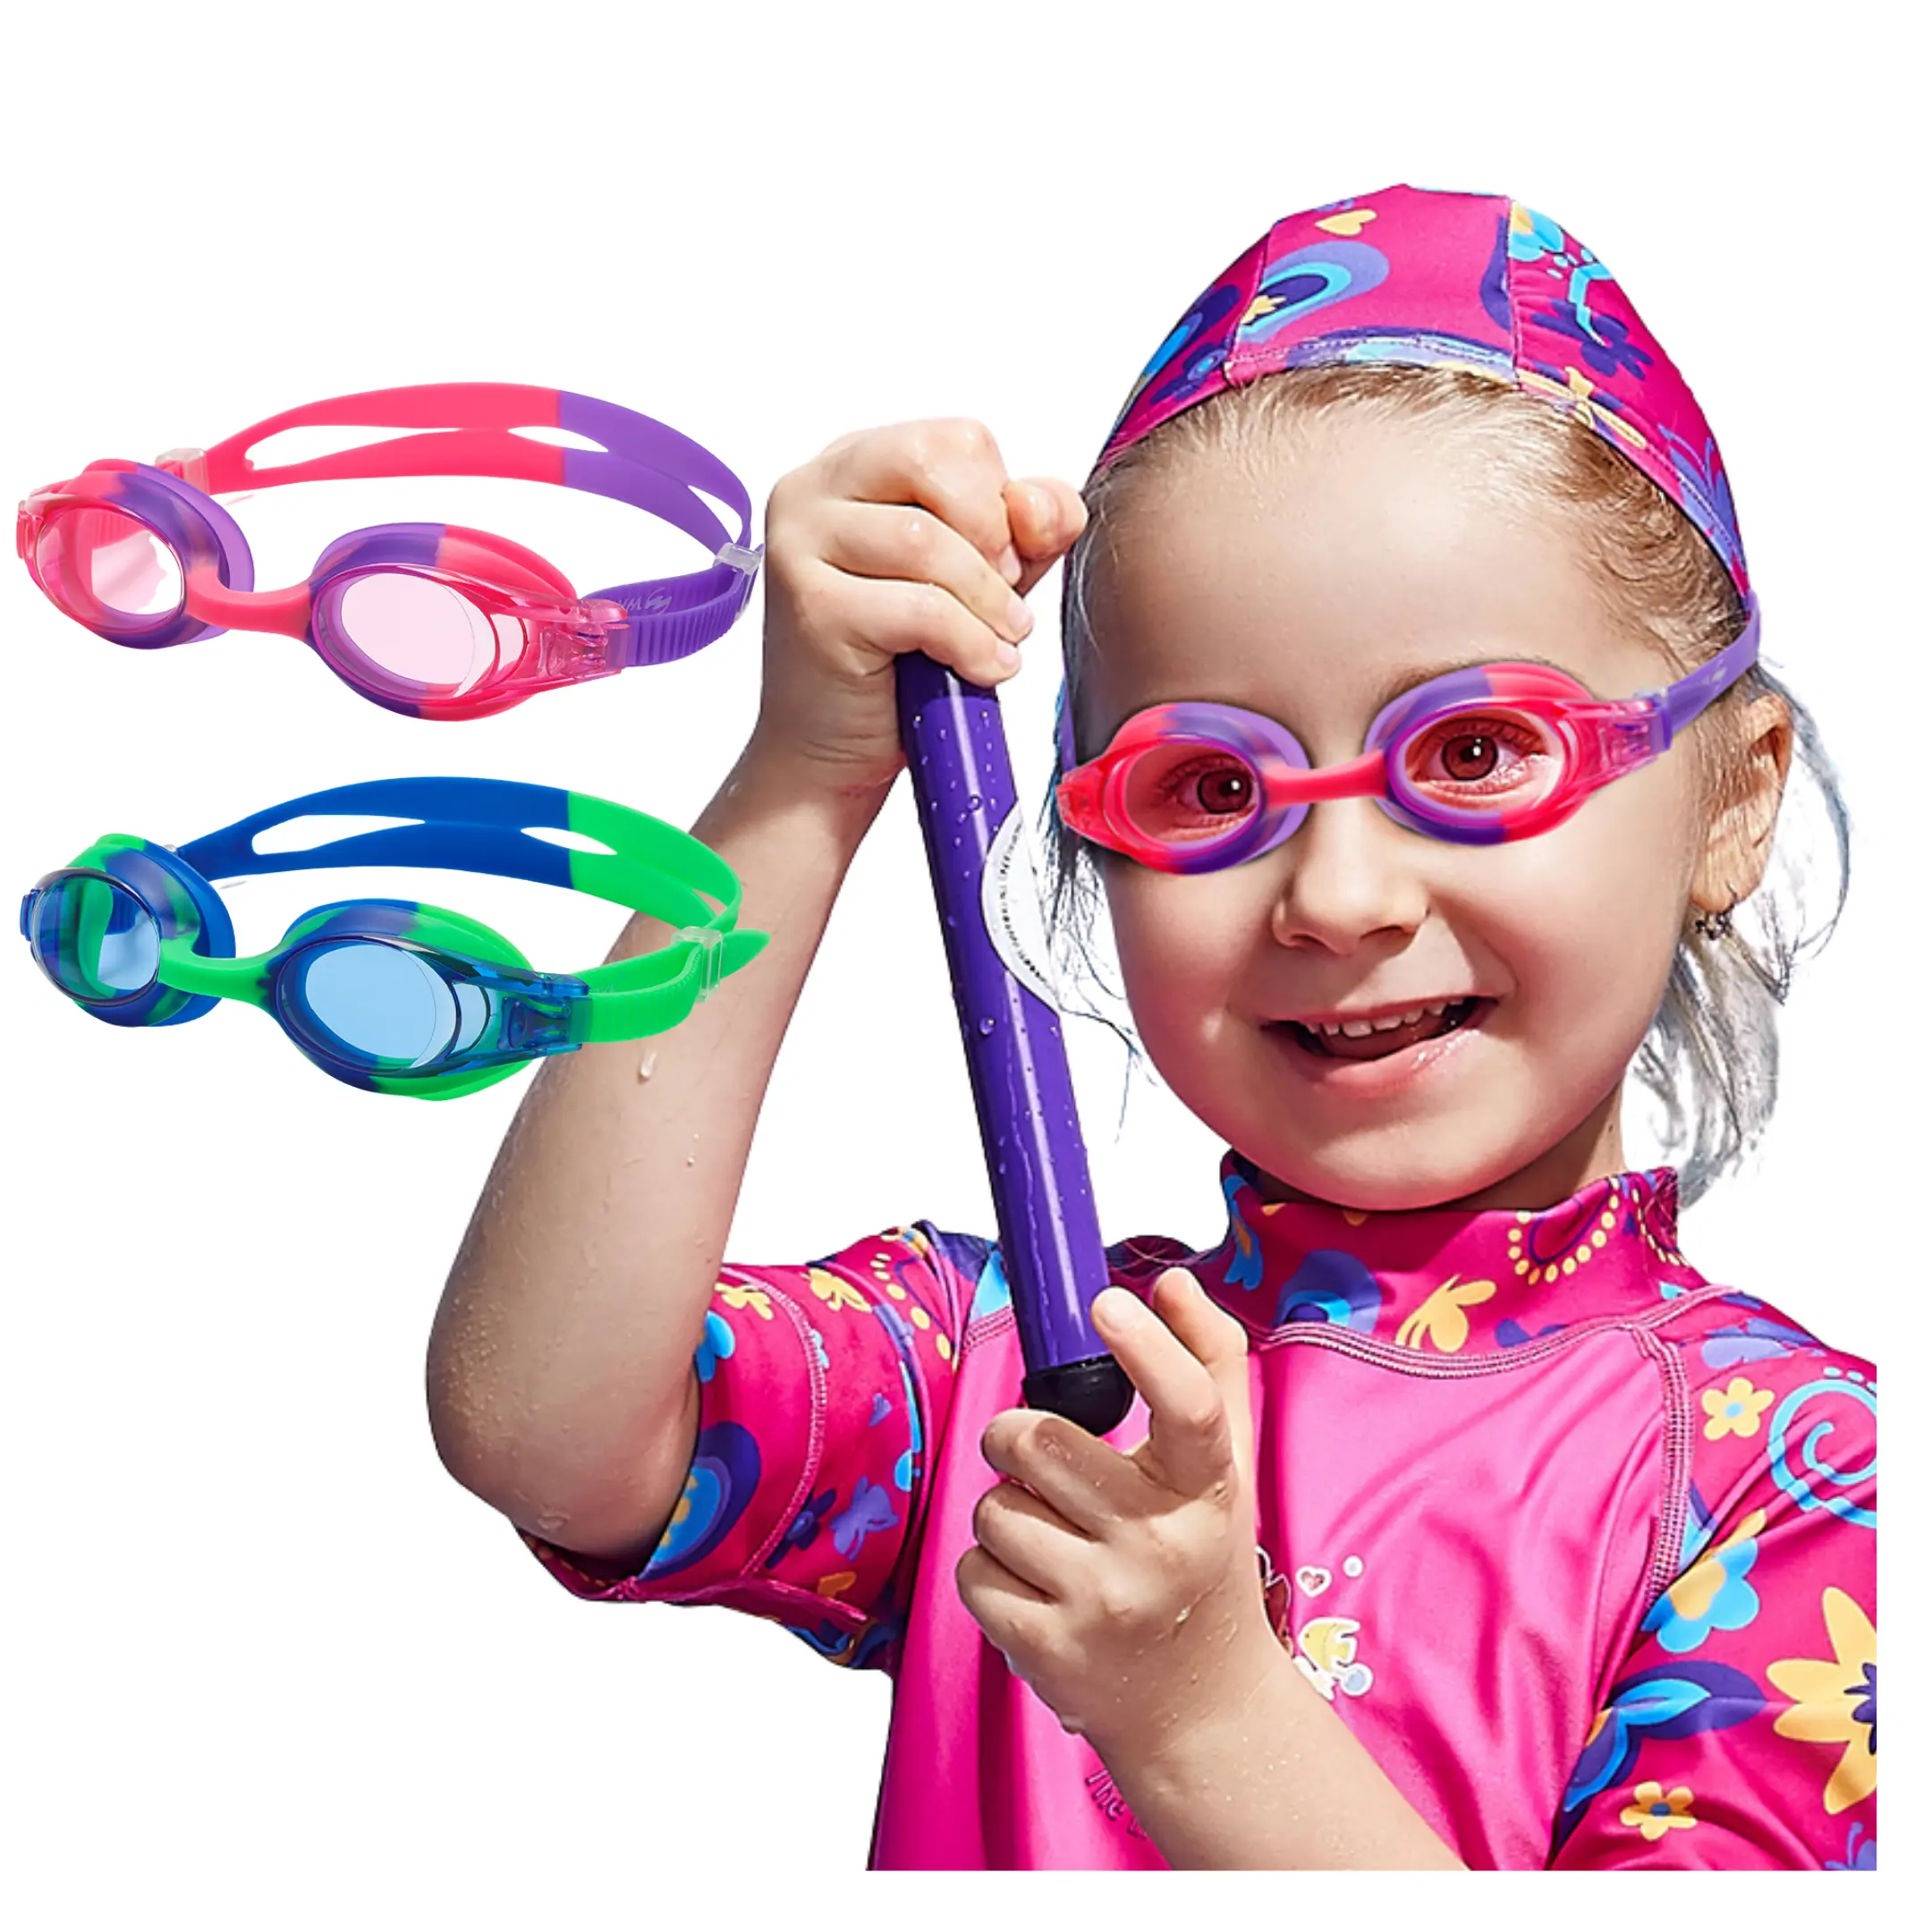 WAVE 뉴 디자인 키즈 안경 수영 안전 수영 고글 더블 렌즈